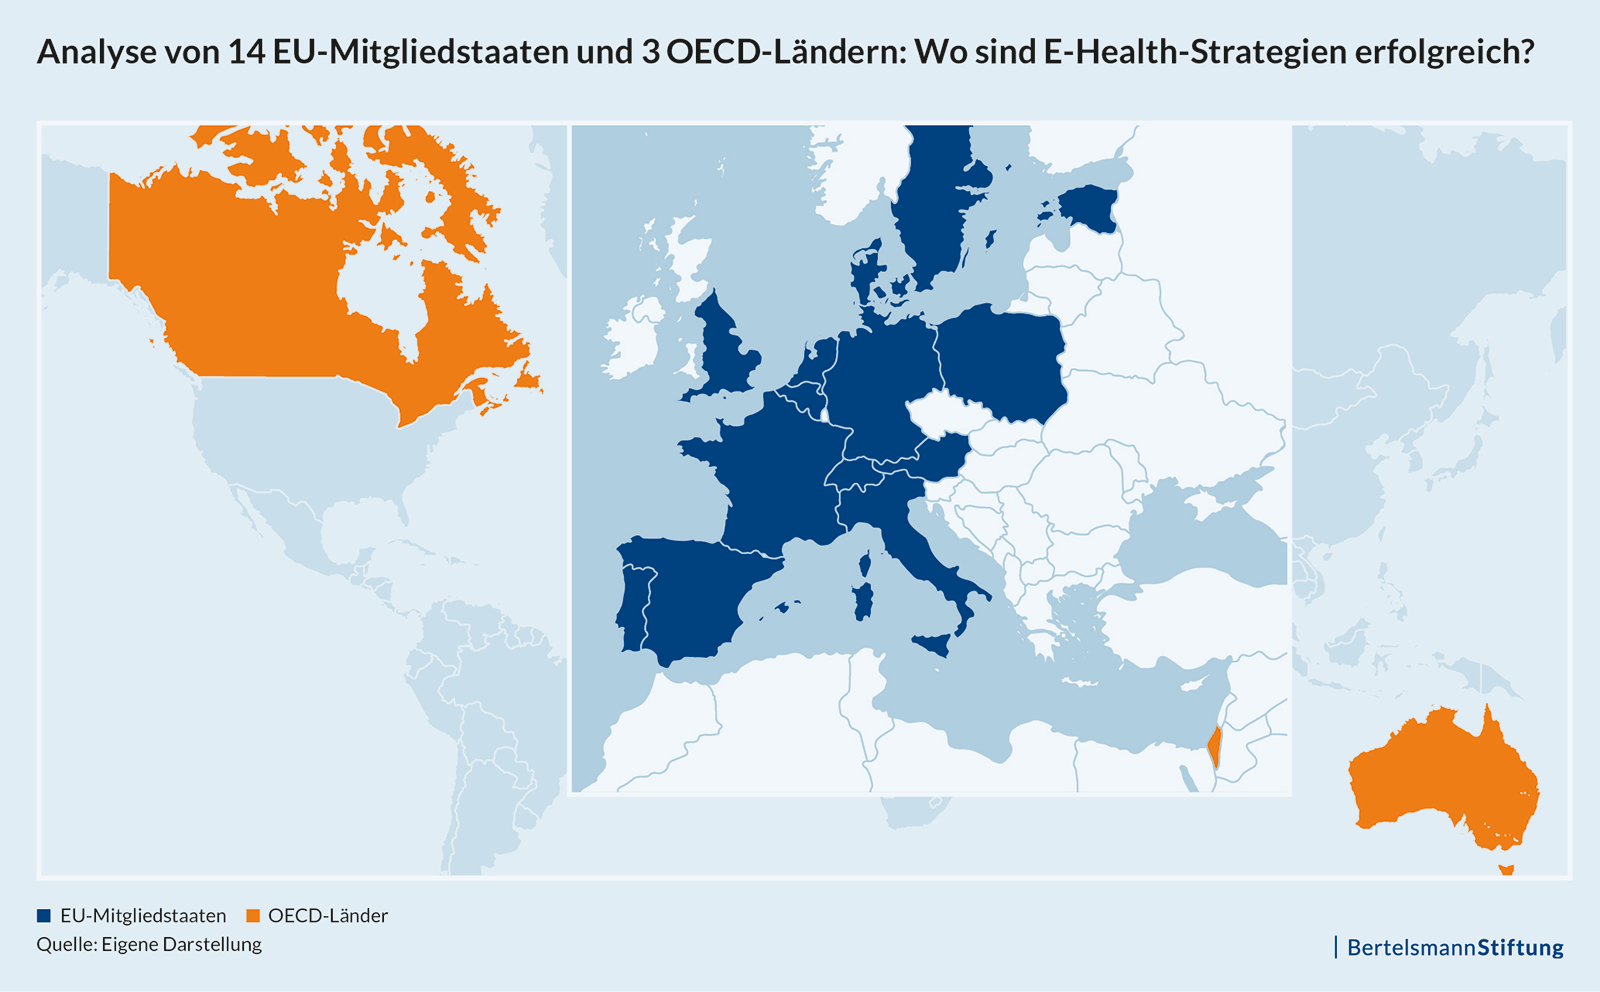 Analyse von 14 EU-Mitgliedsstaaten und 3 OECD-Ländern: Wo sind E-Health-Strategien erfolgreich?